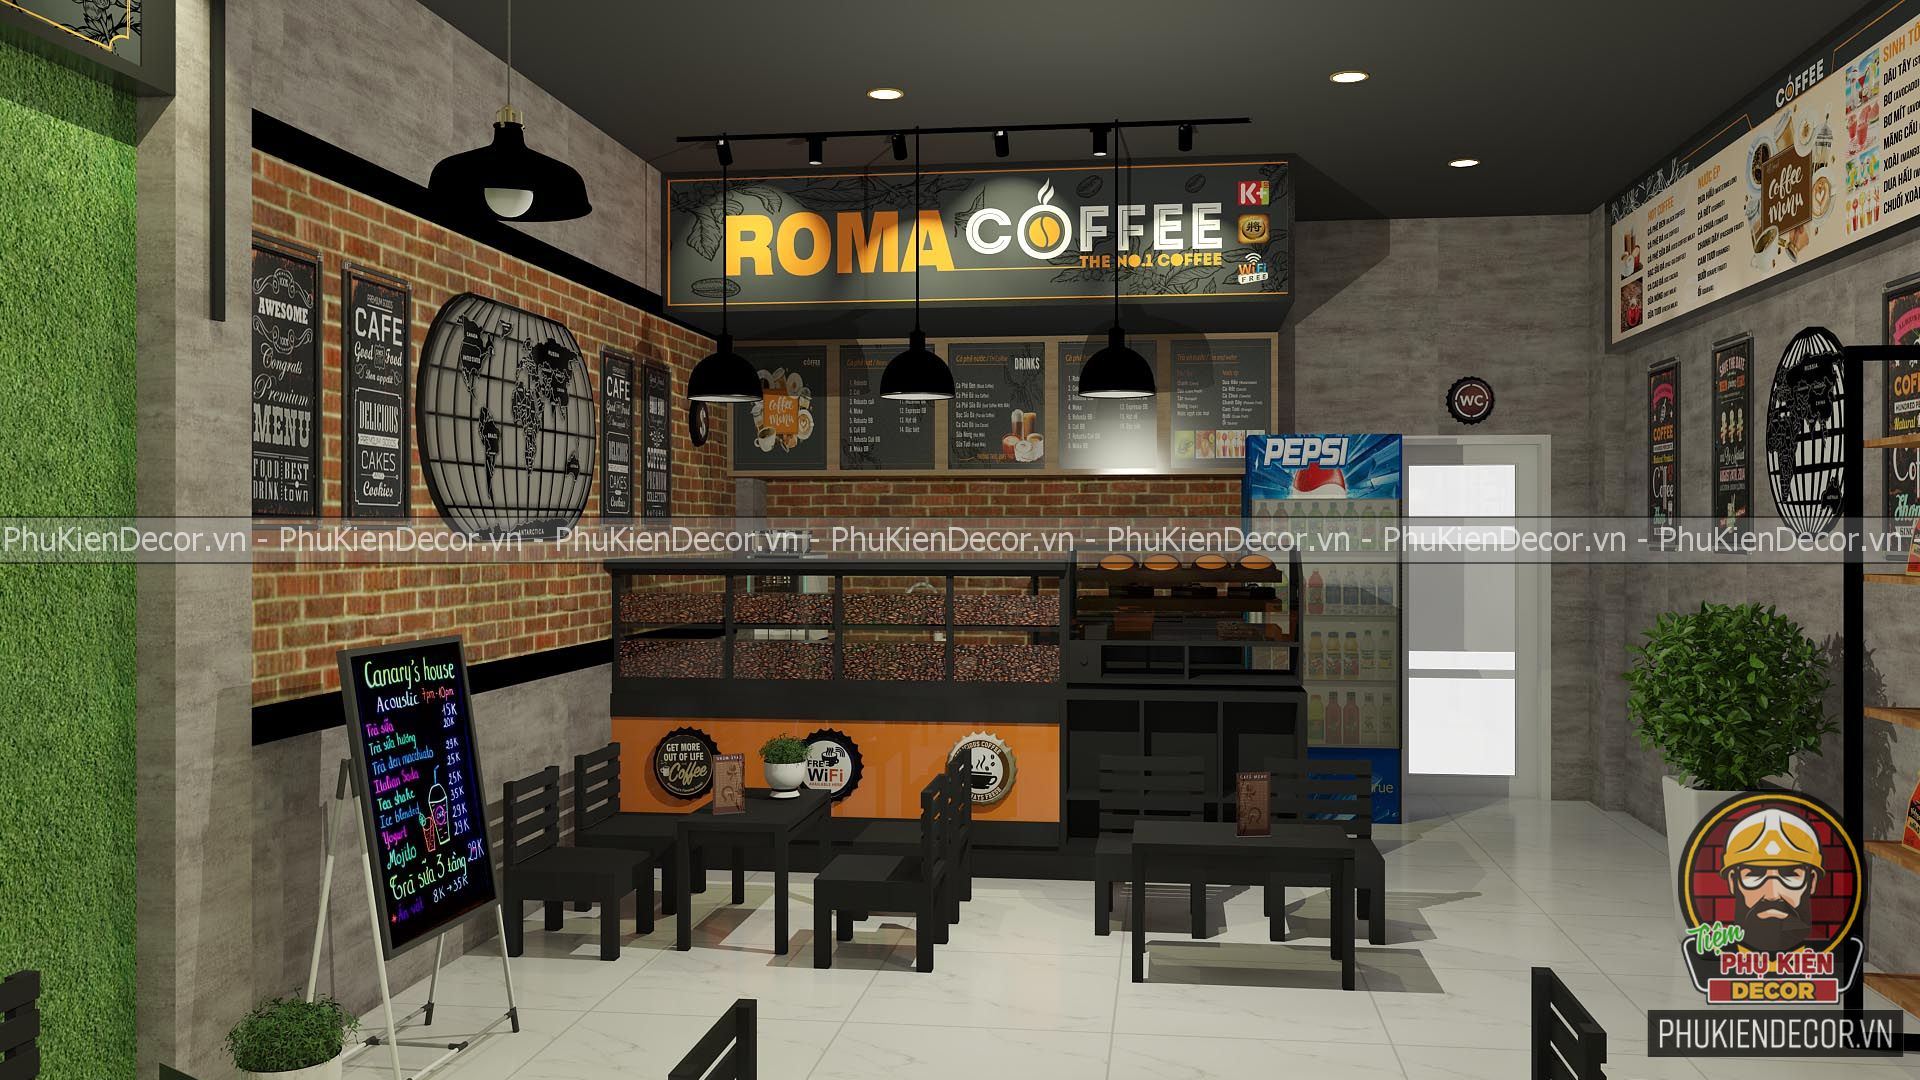 Bạn đang muốn mở quán cafe nhỏ? Đừng lo lắng, chúng tôi có những thiết kế quán cafe đẹp và tiện nghi giúp bạn đưa ra những trải nghiệm mới cho khách hàng. Với việc tối ưu hoá không gian, quán cafe sẽ trở thành một điểm đến yêu thích cho những ai đam mê cà phê.